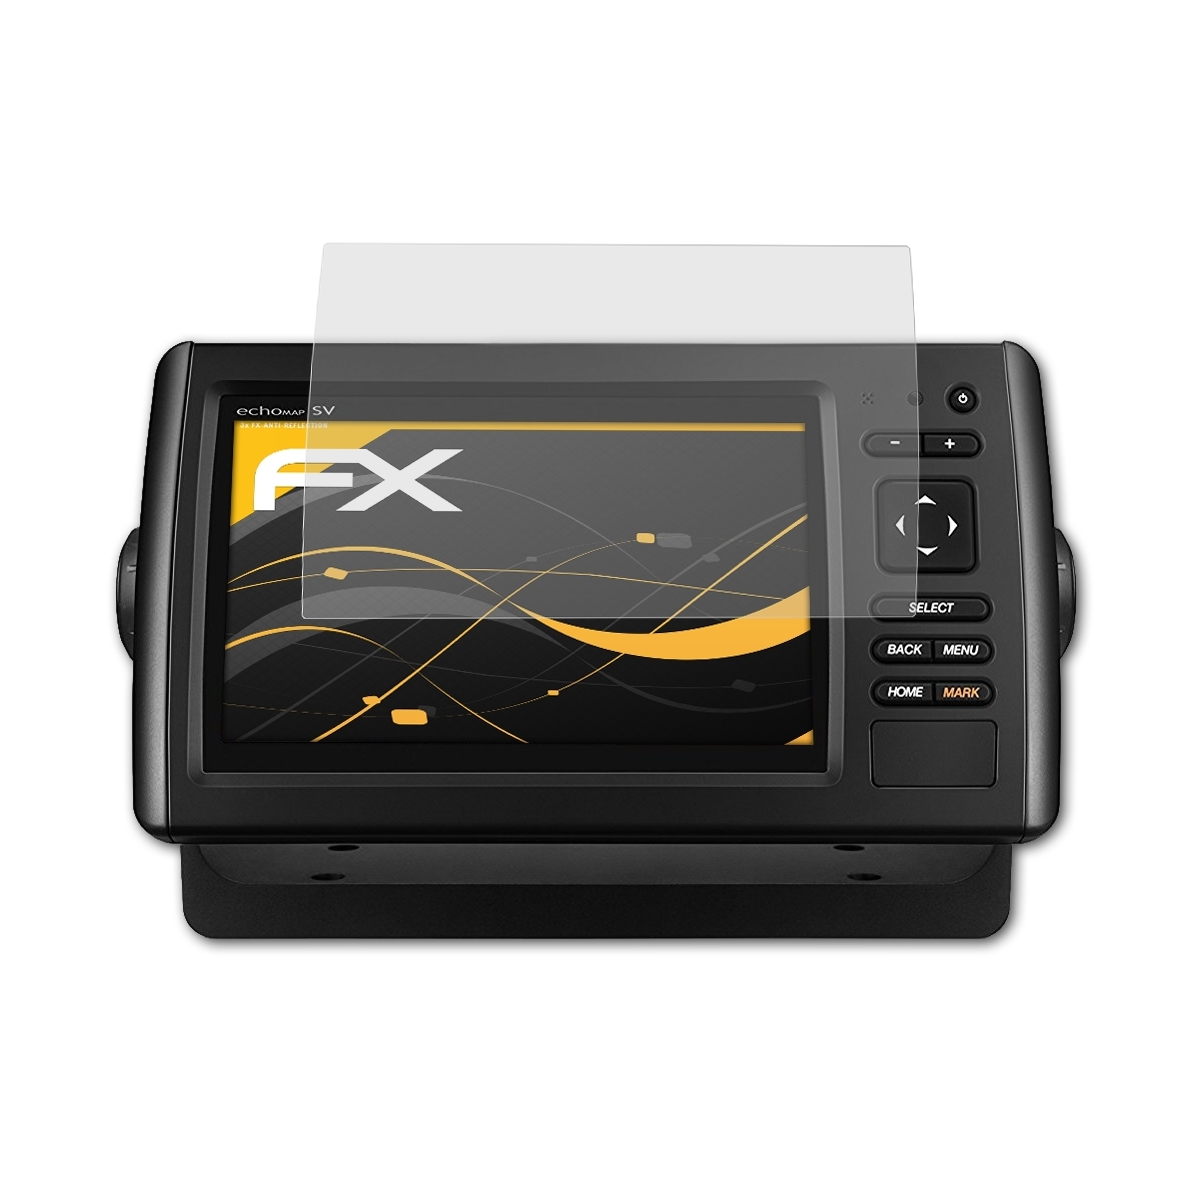 ATFOLIX FX-Antireflex CHIRP Displayschutz(für echoMAP 3x 72sv) Garmin